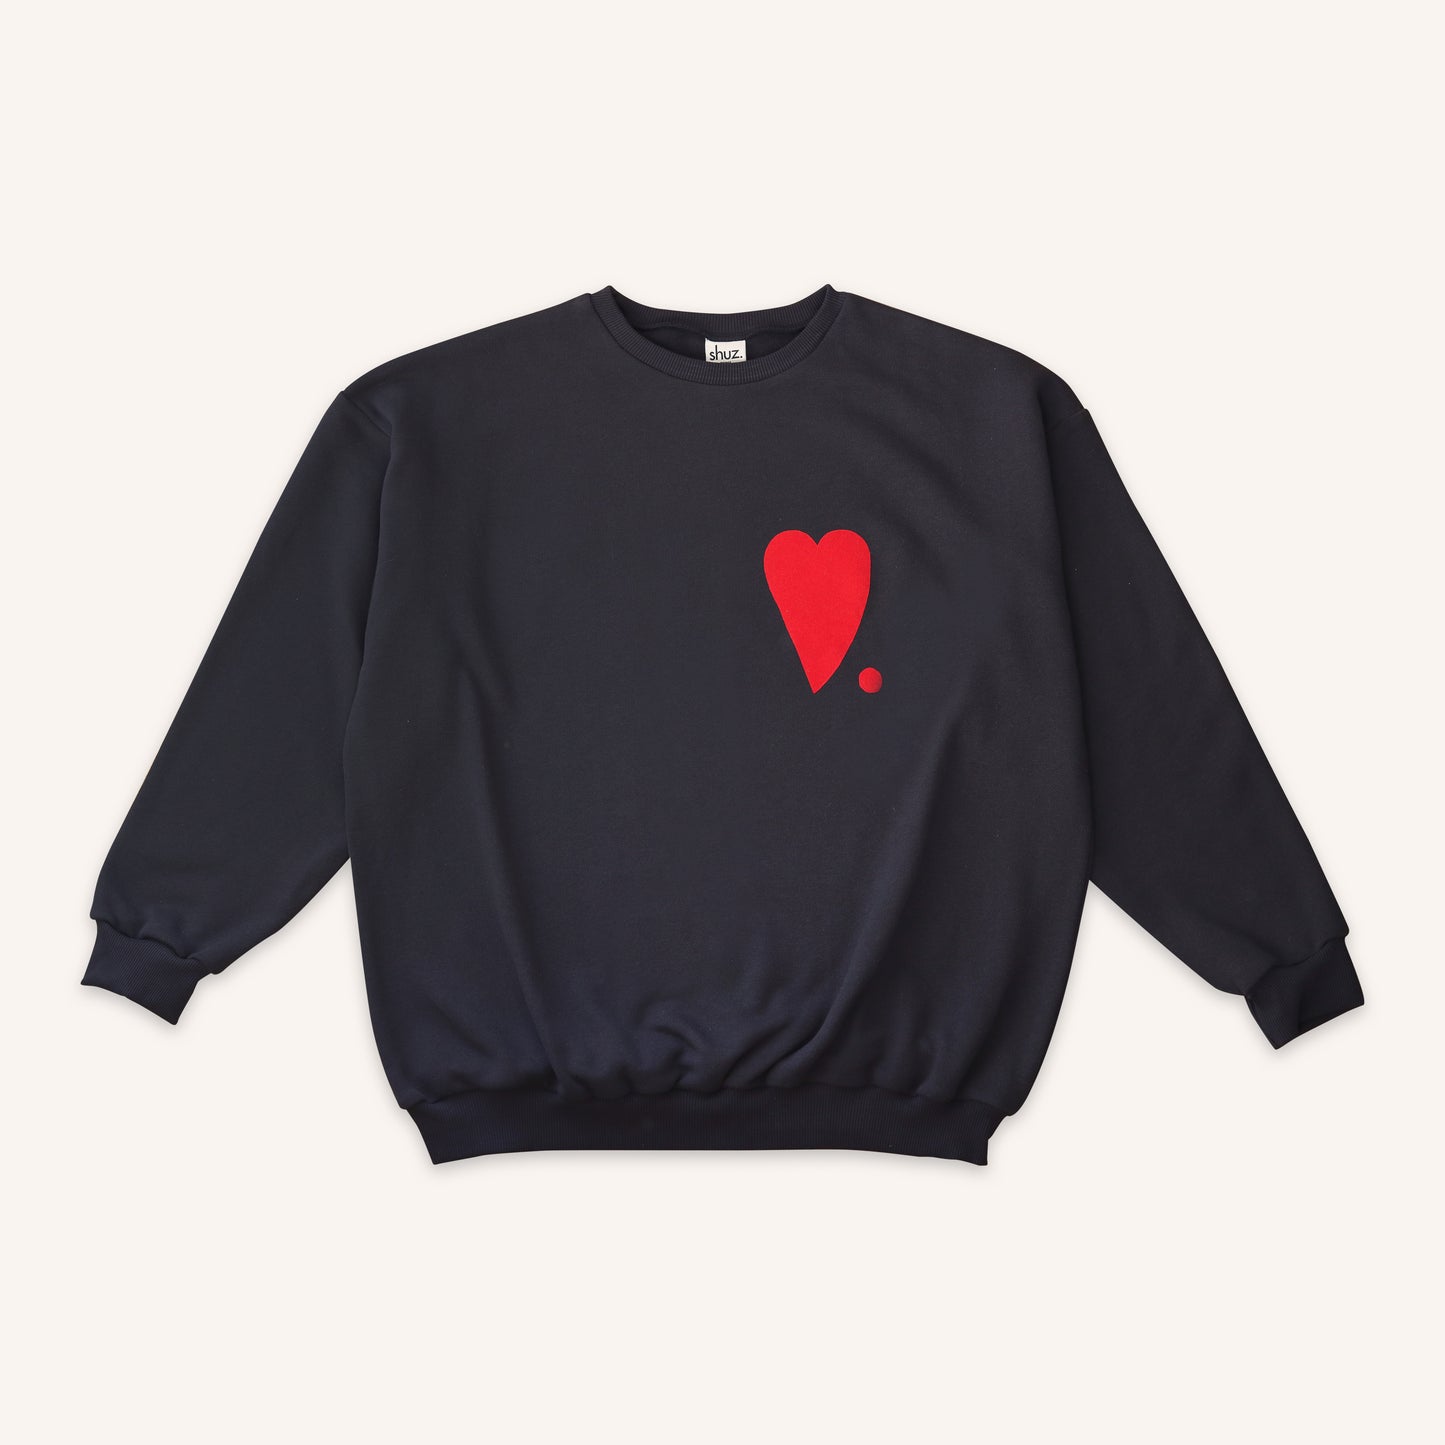 Blue Heart - adults sweatshirt